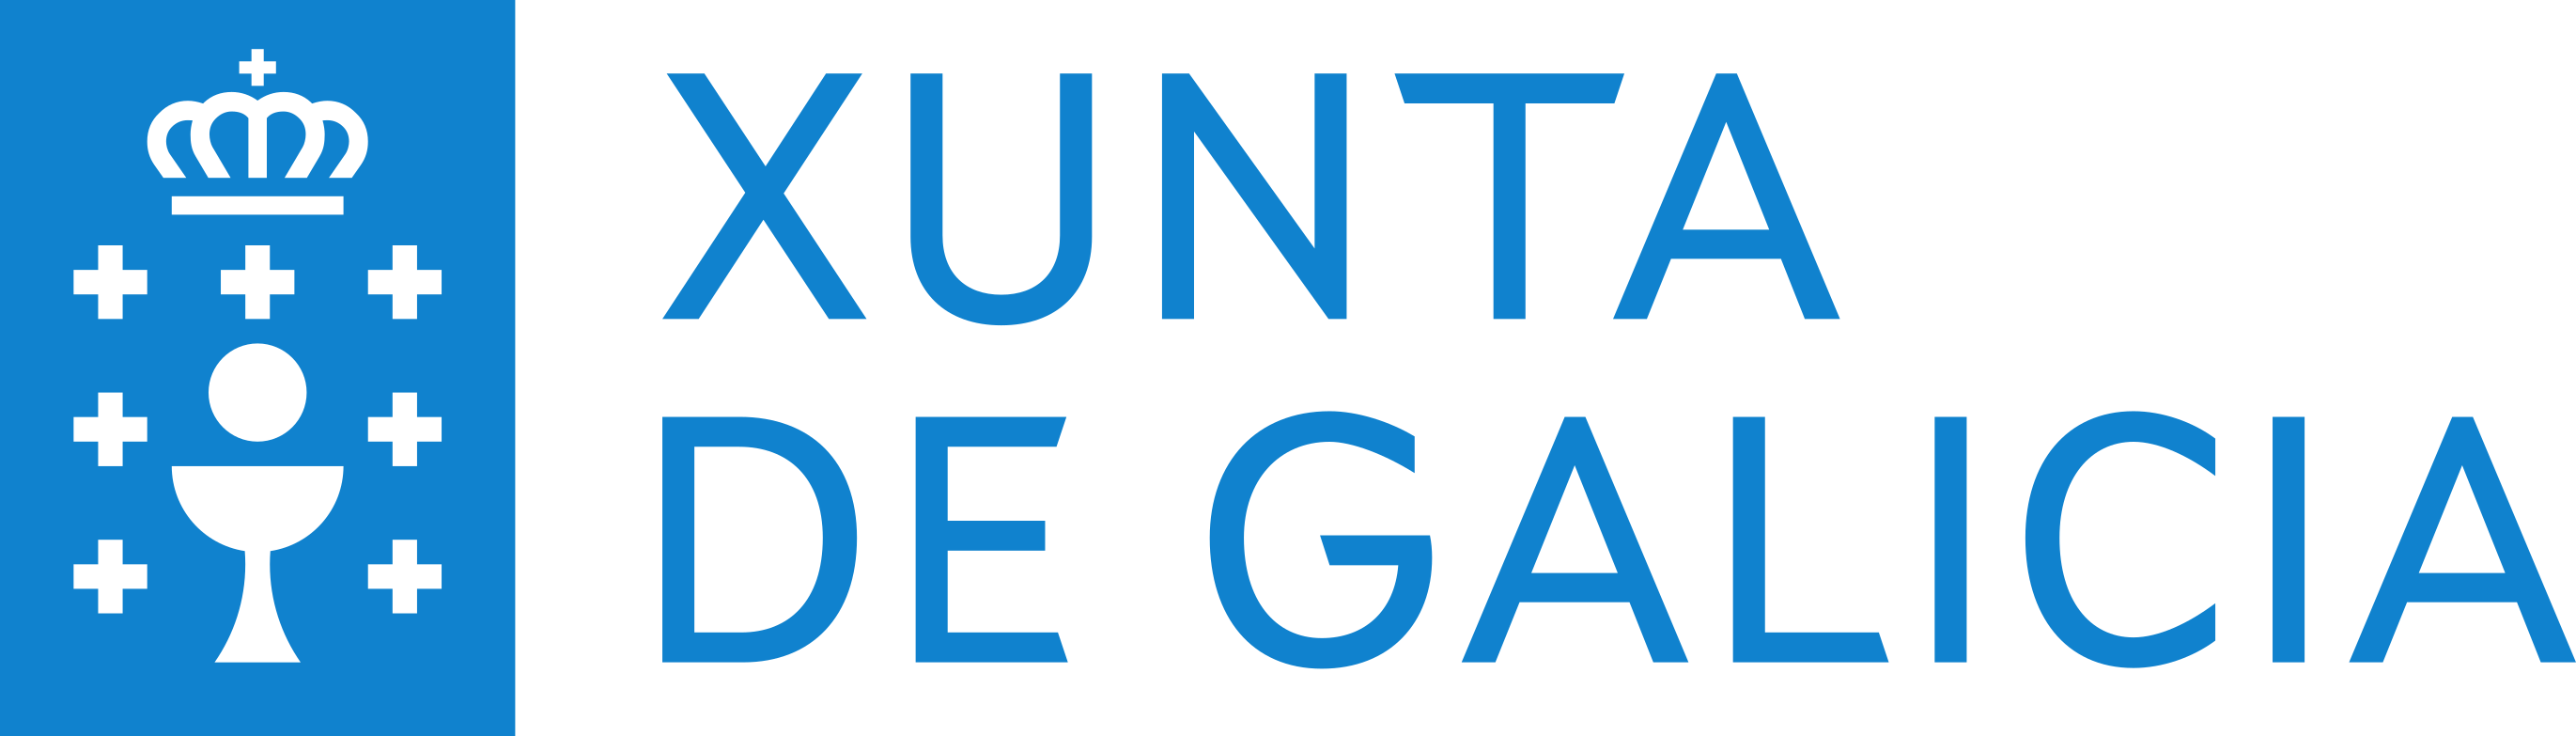 Logotipo Xunta de Galicia